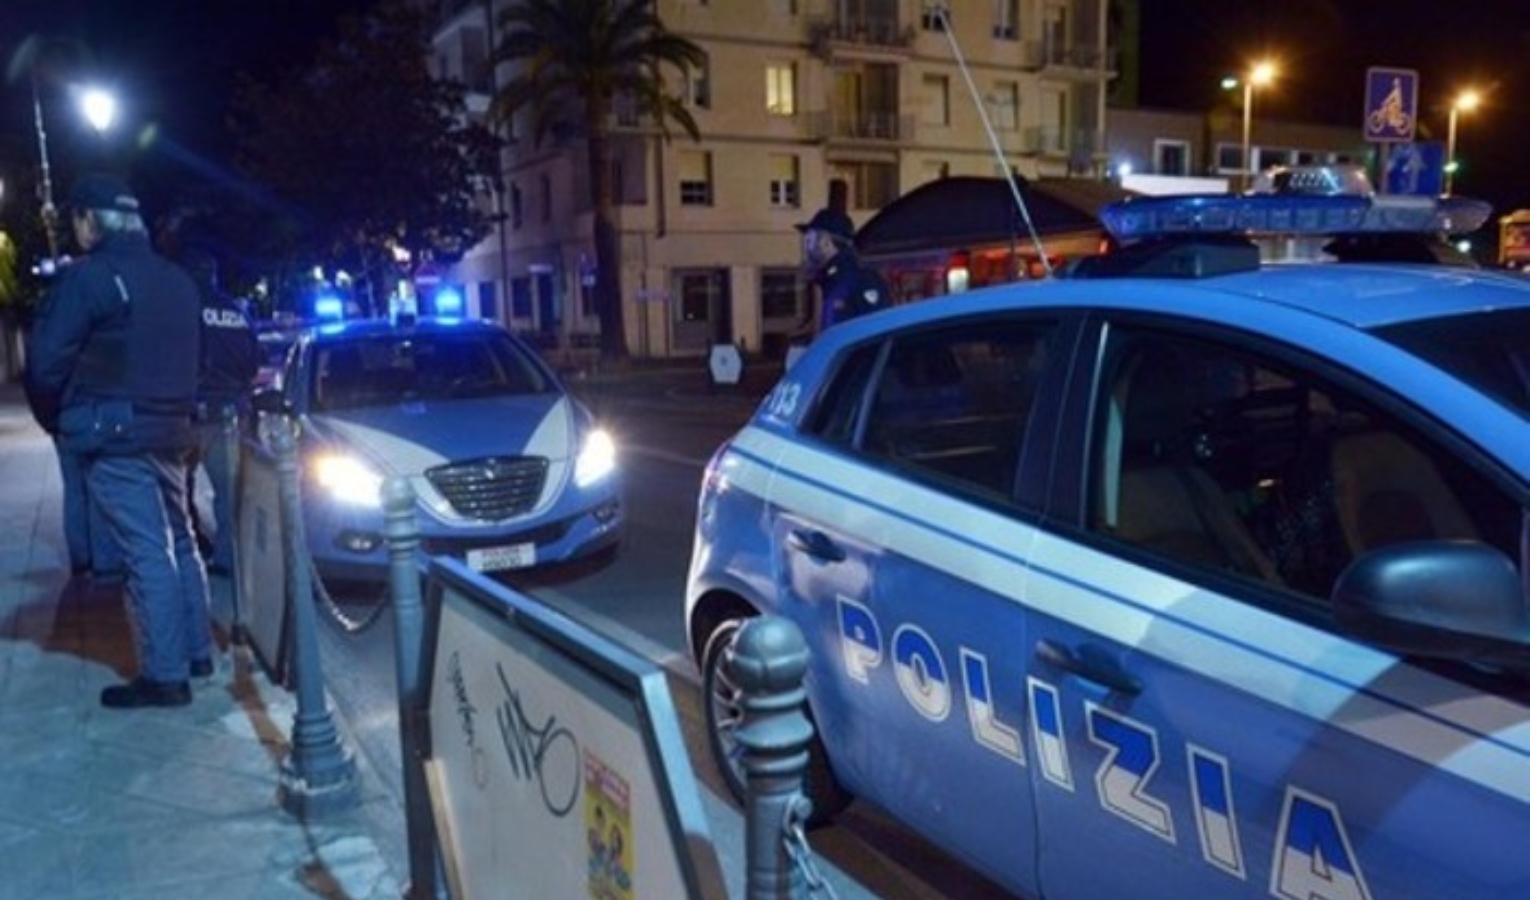 Genova, spacca finestrini di 6 auto parcheggiate per rubare: arrestato